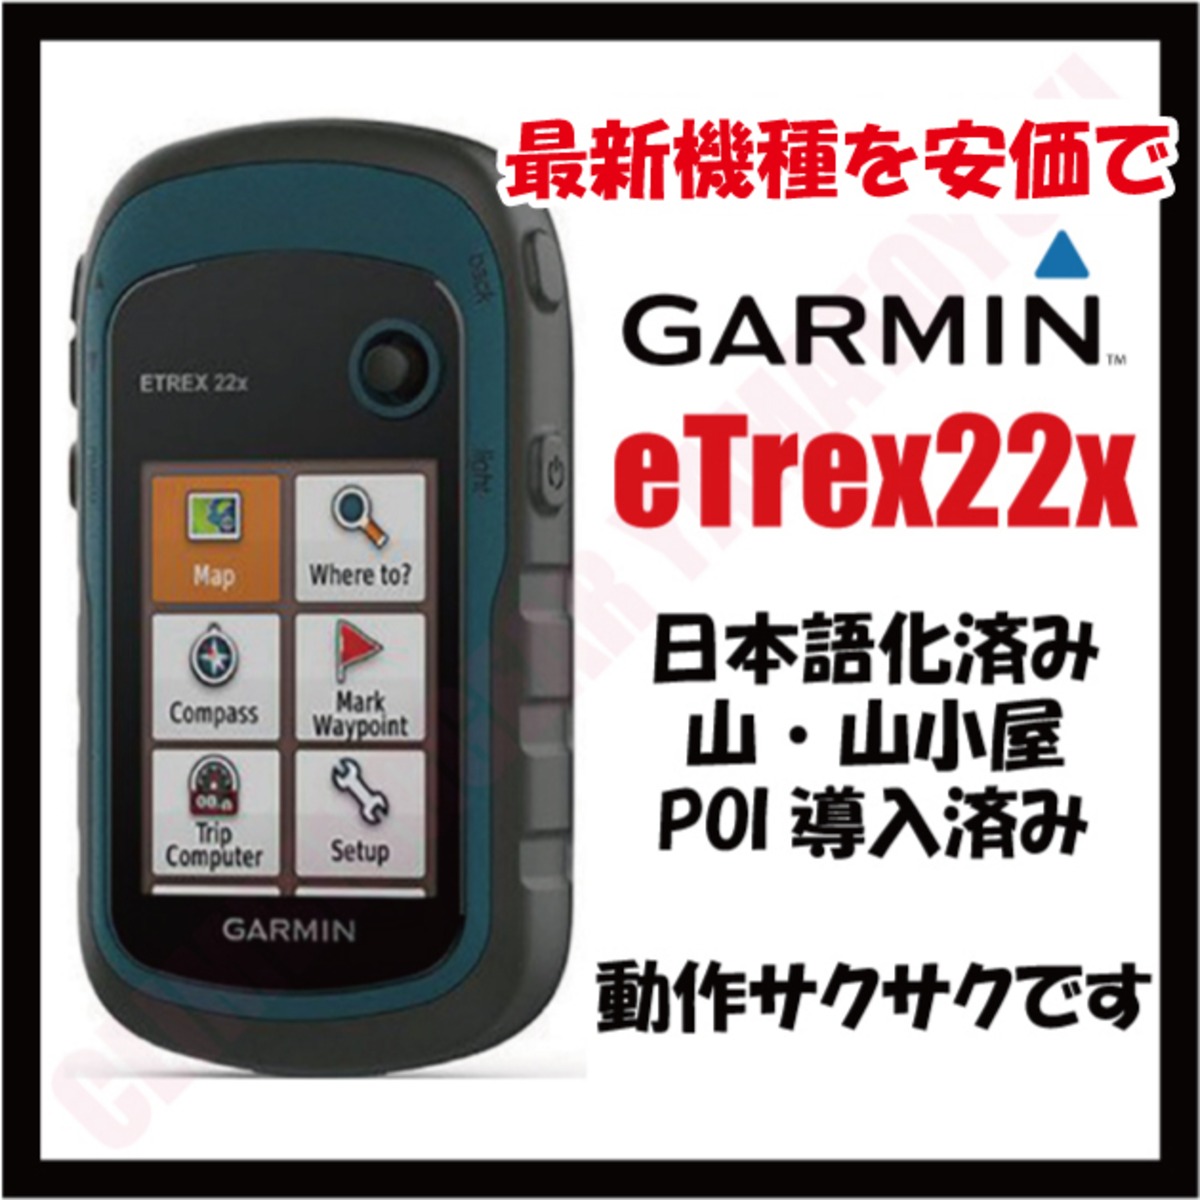 日本語化済み 欧州版 GARMIN ETREX 22X | 山岳登攀用品輸入販売 岳と雪